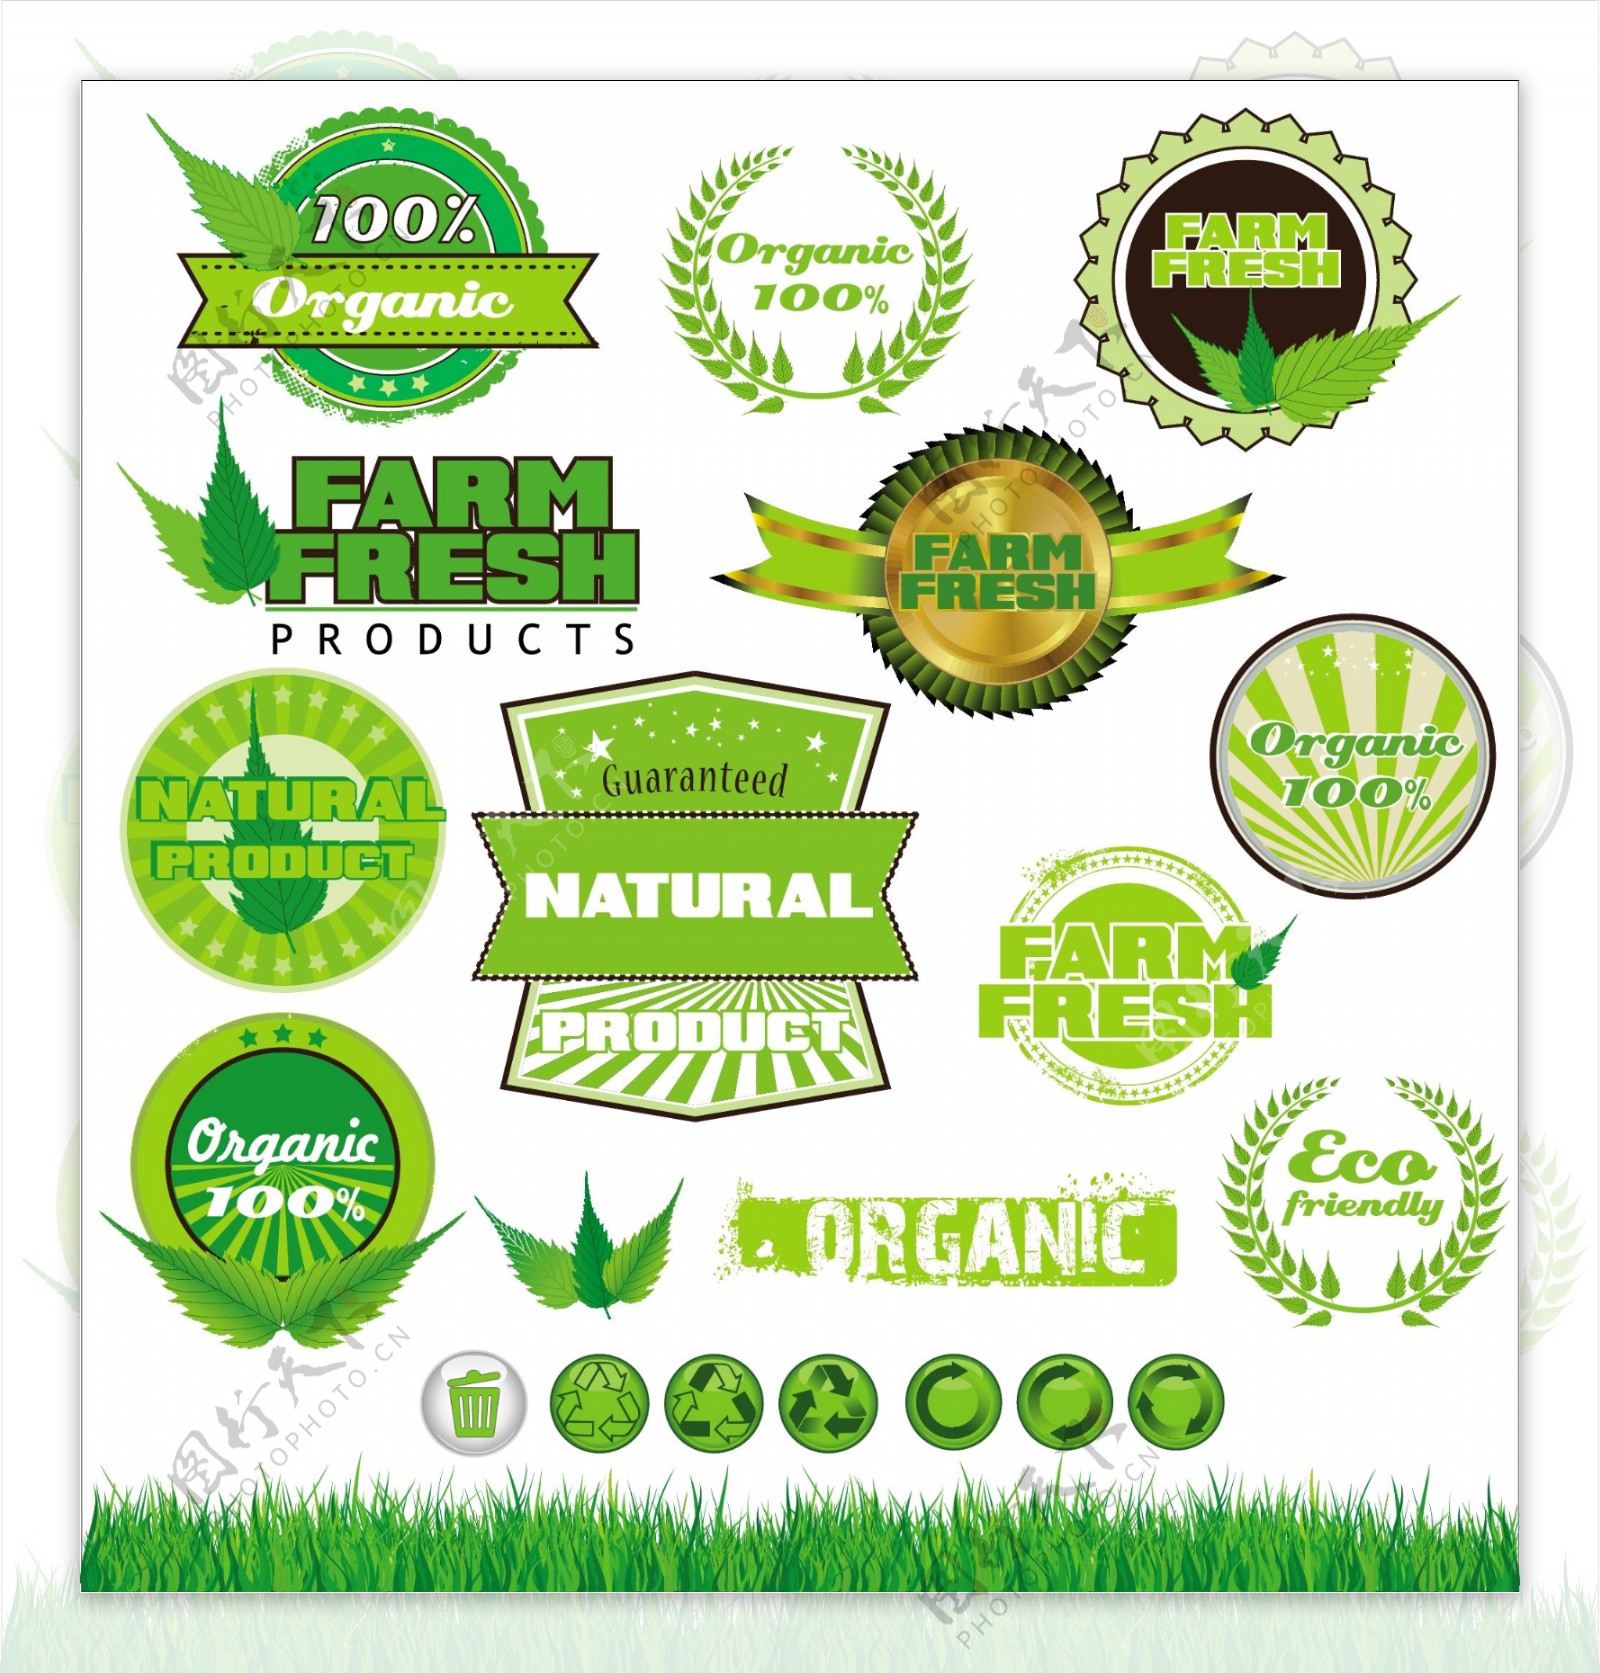 绿色环保标签贴纸